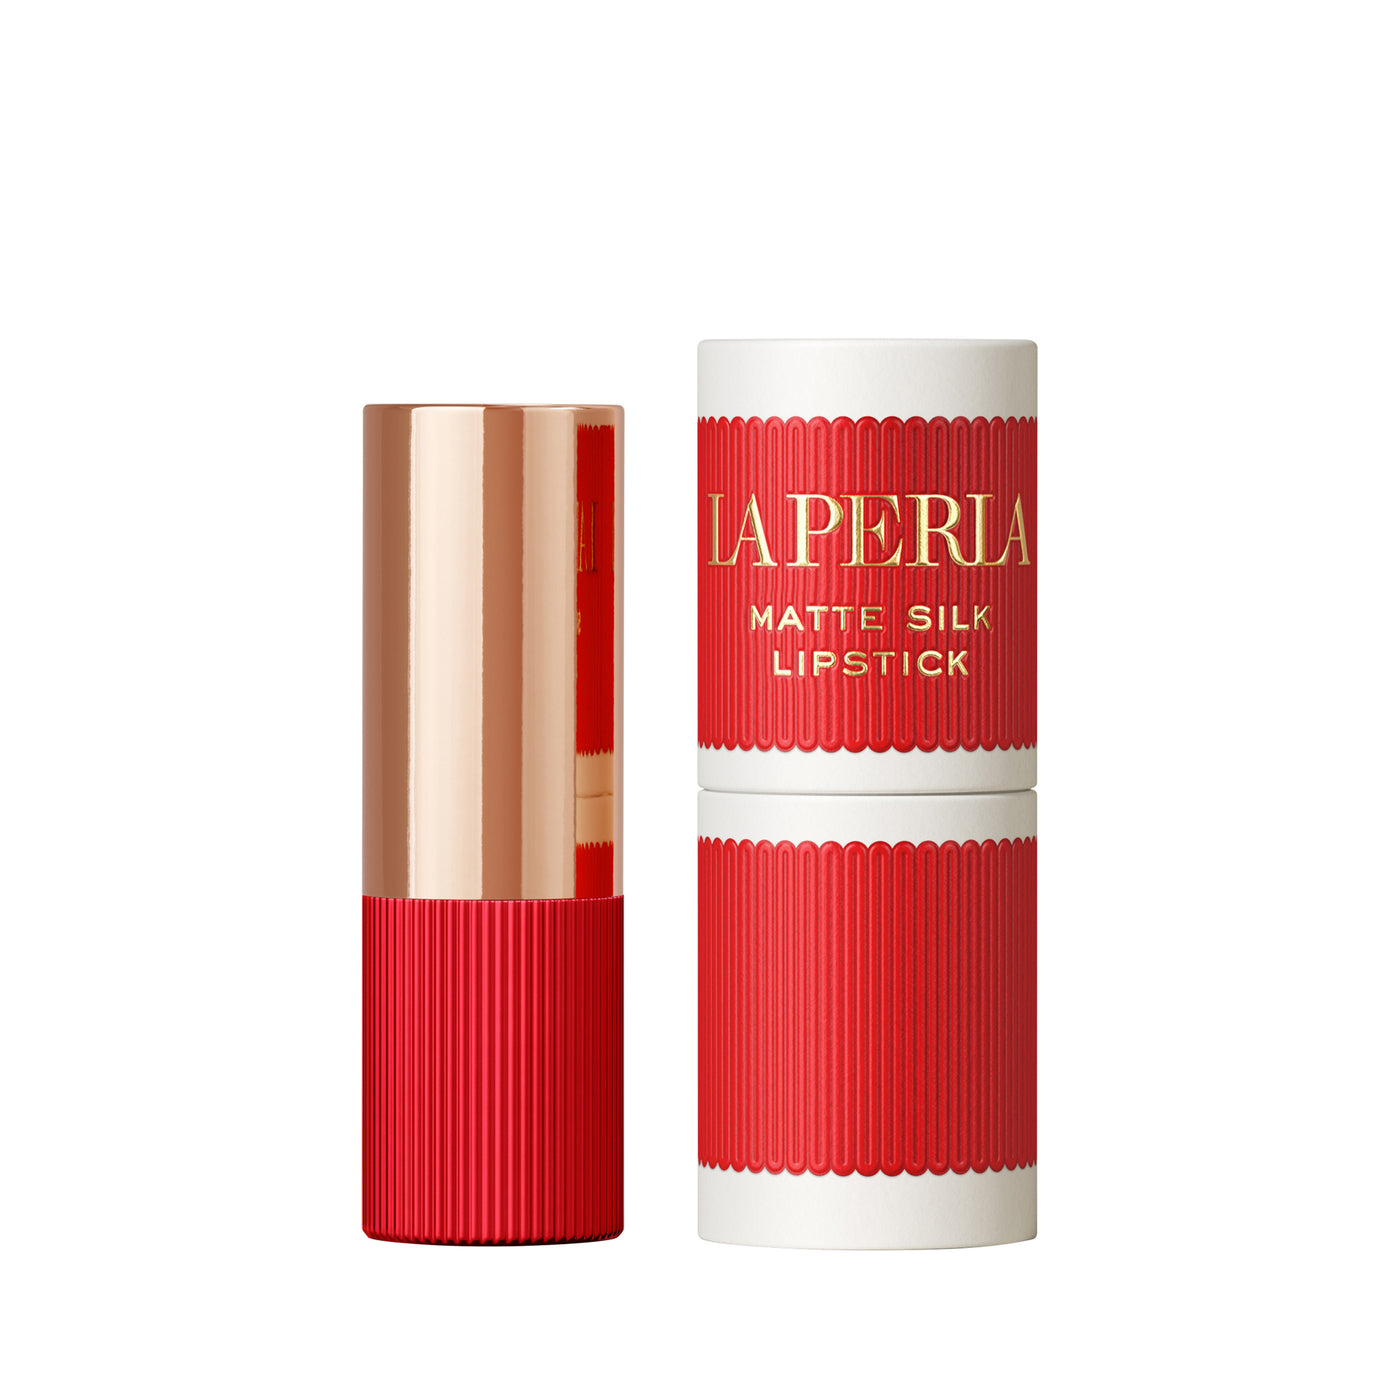 La Perla Lipstick 3.5g Tiramisu Red